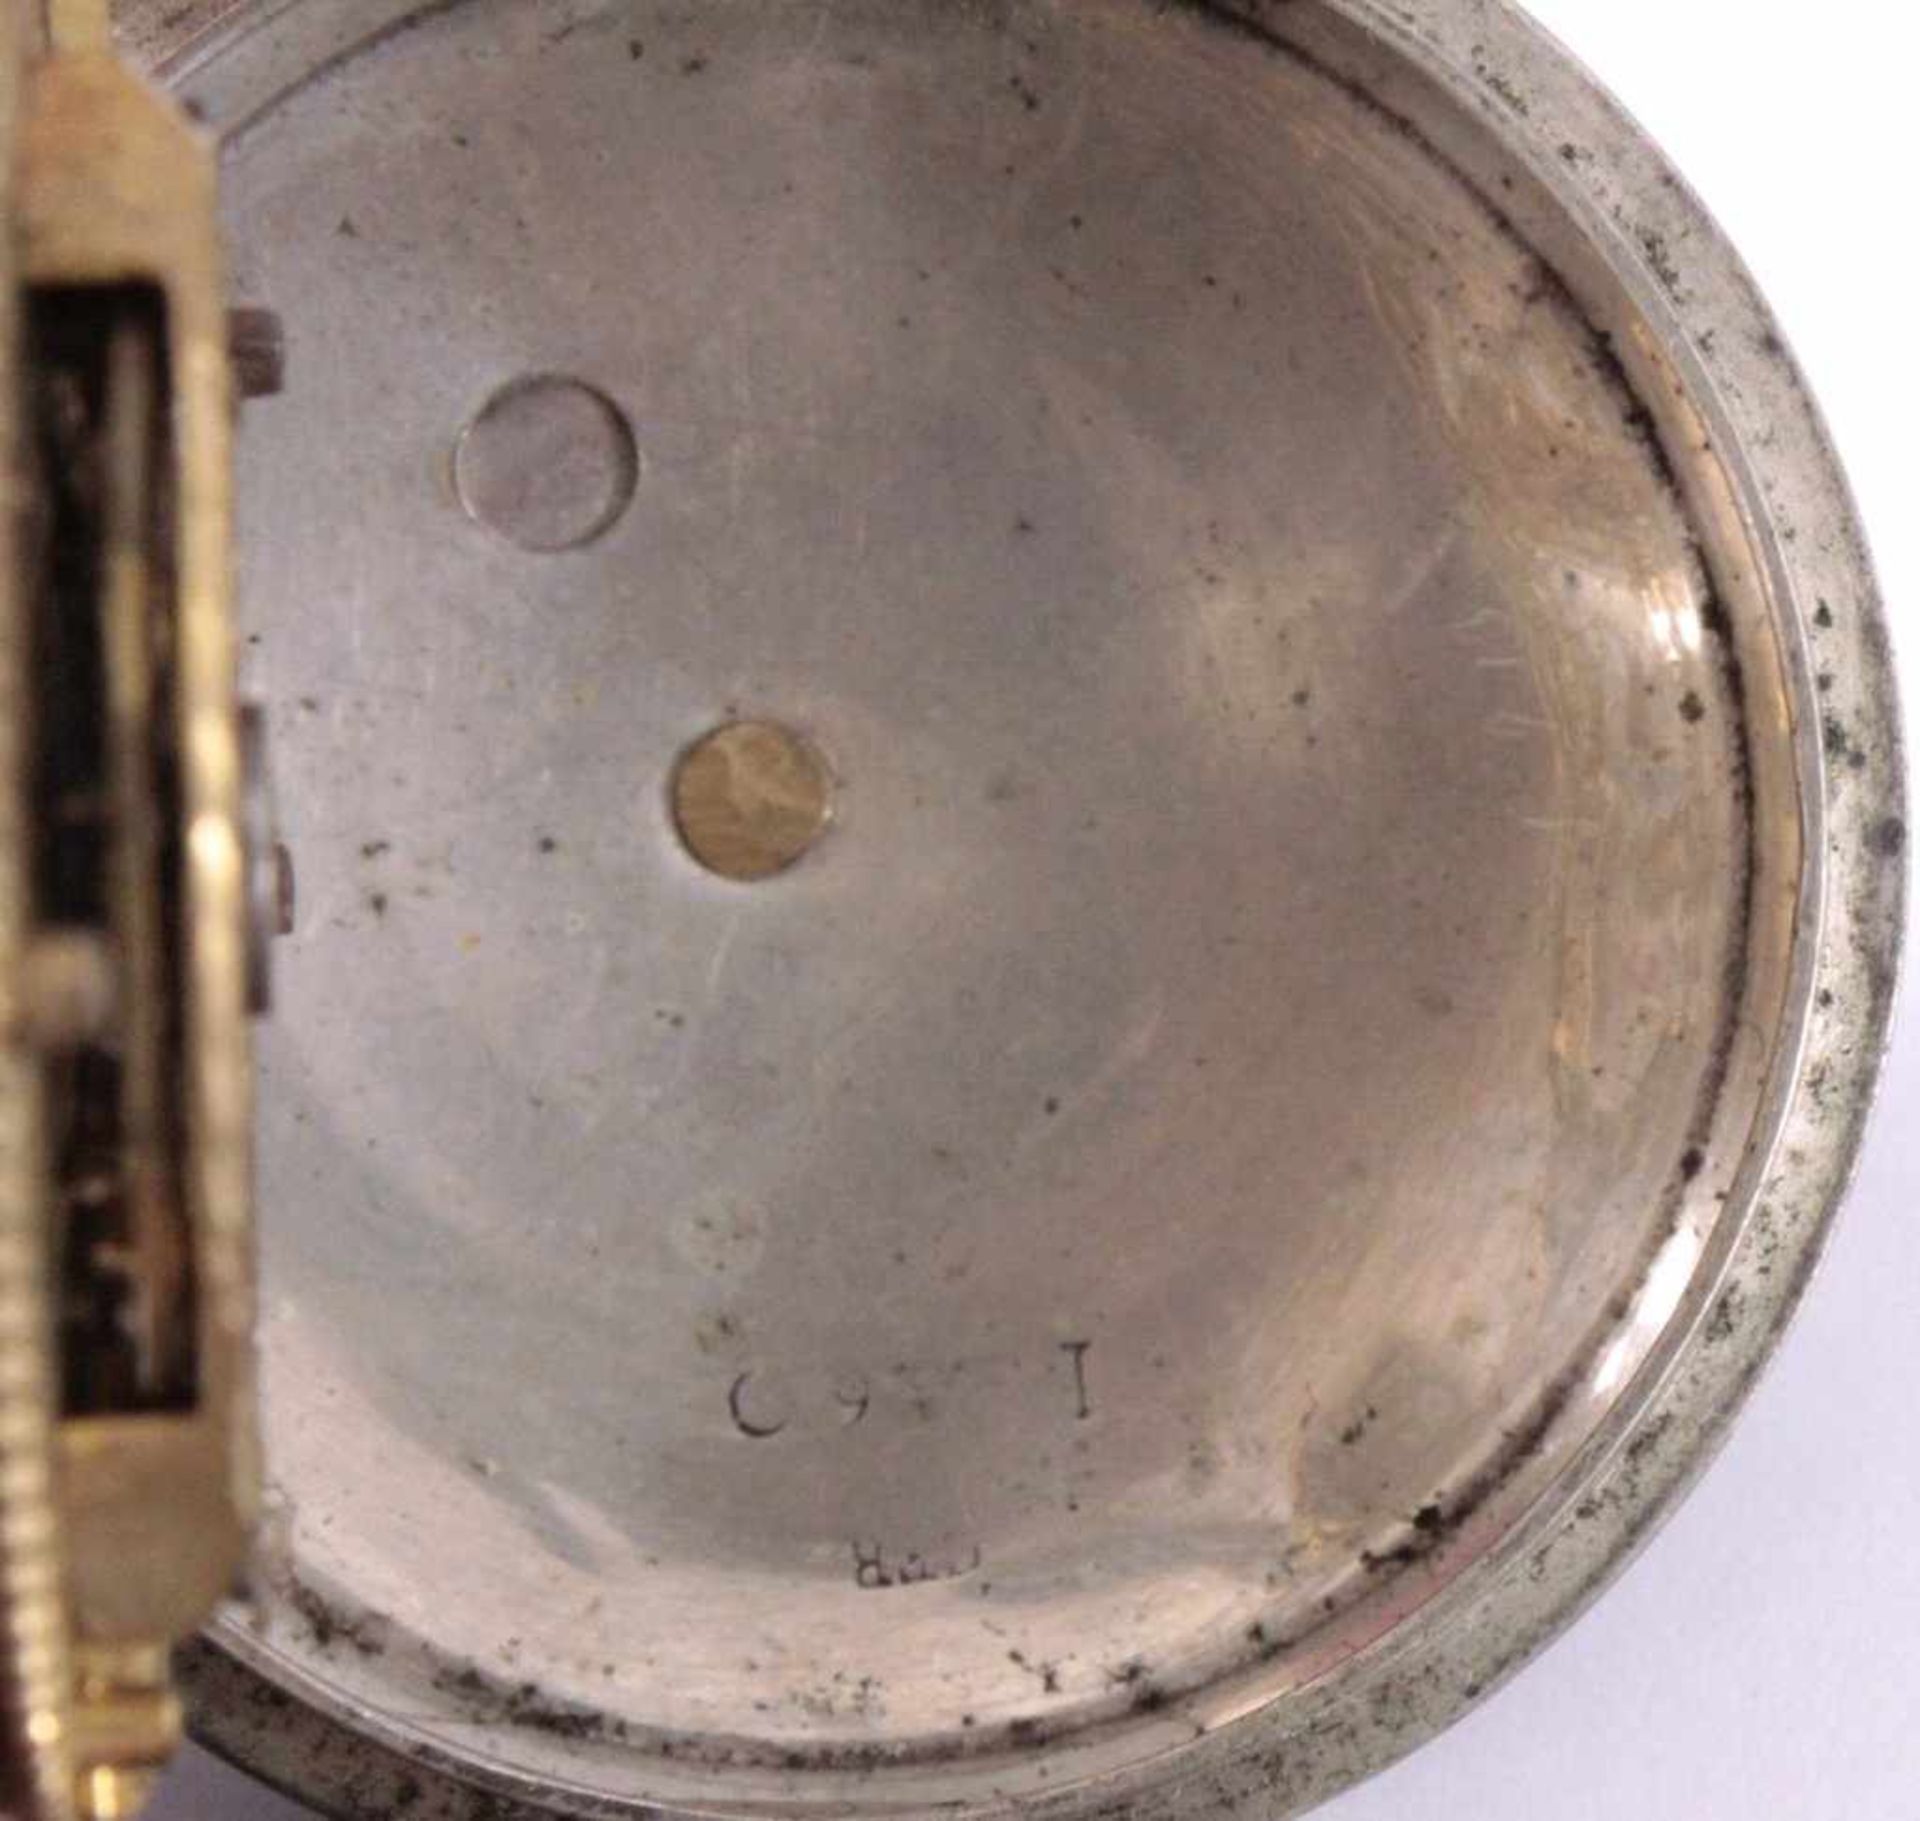 Taschenuhr aus der 1. Hälfte des 20. Jh.Silbernes Gehäuse (beschädigt), Emailziffernblatt - Bild 5 aus 6